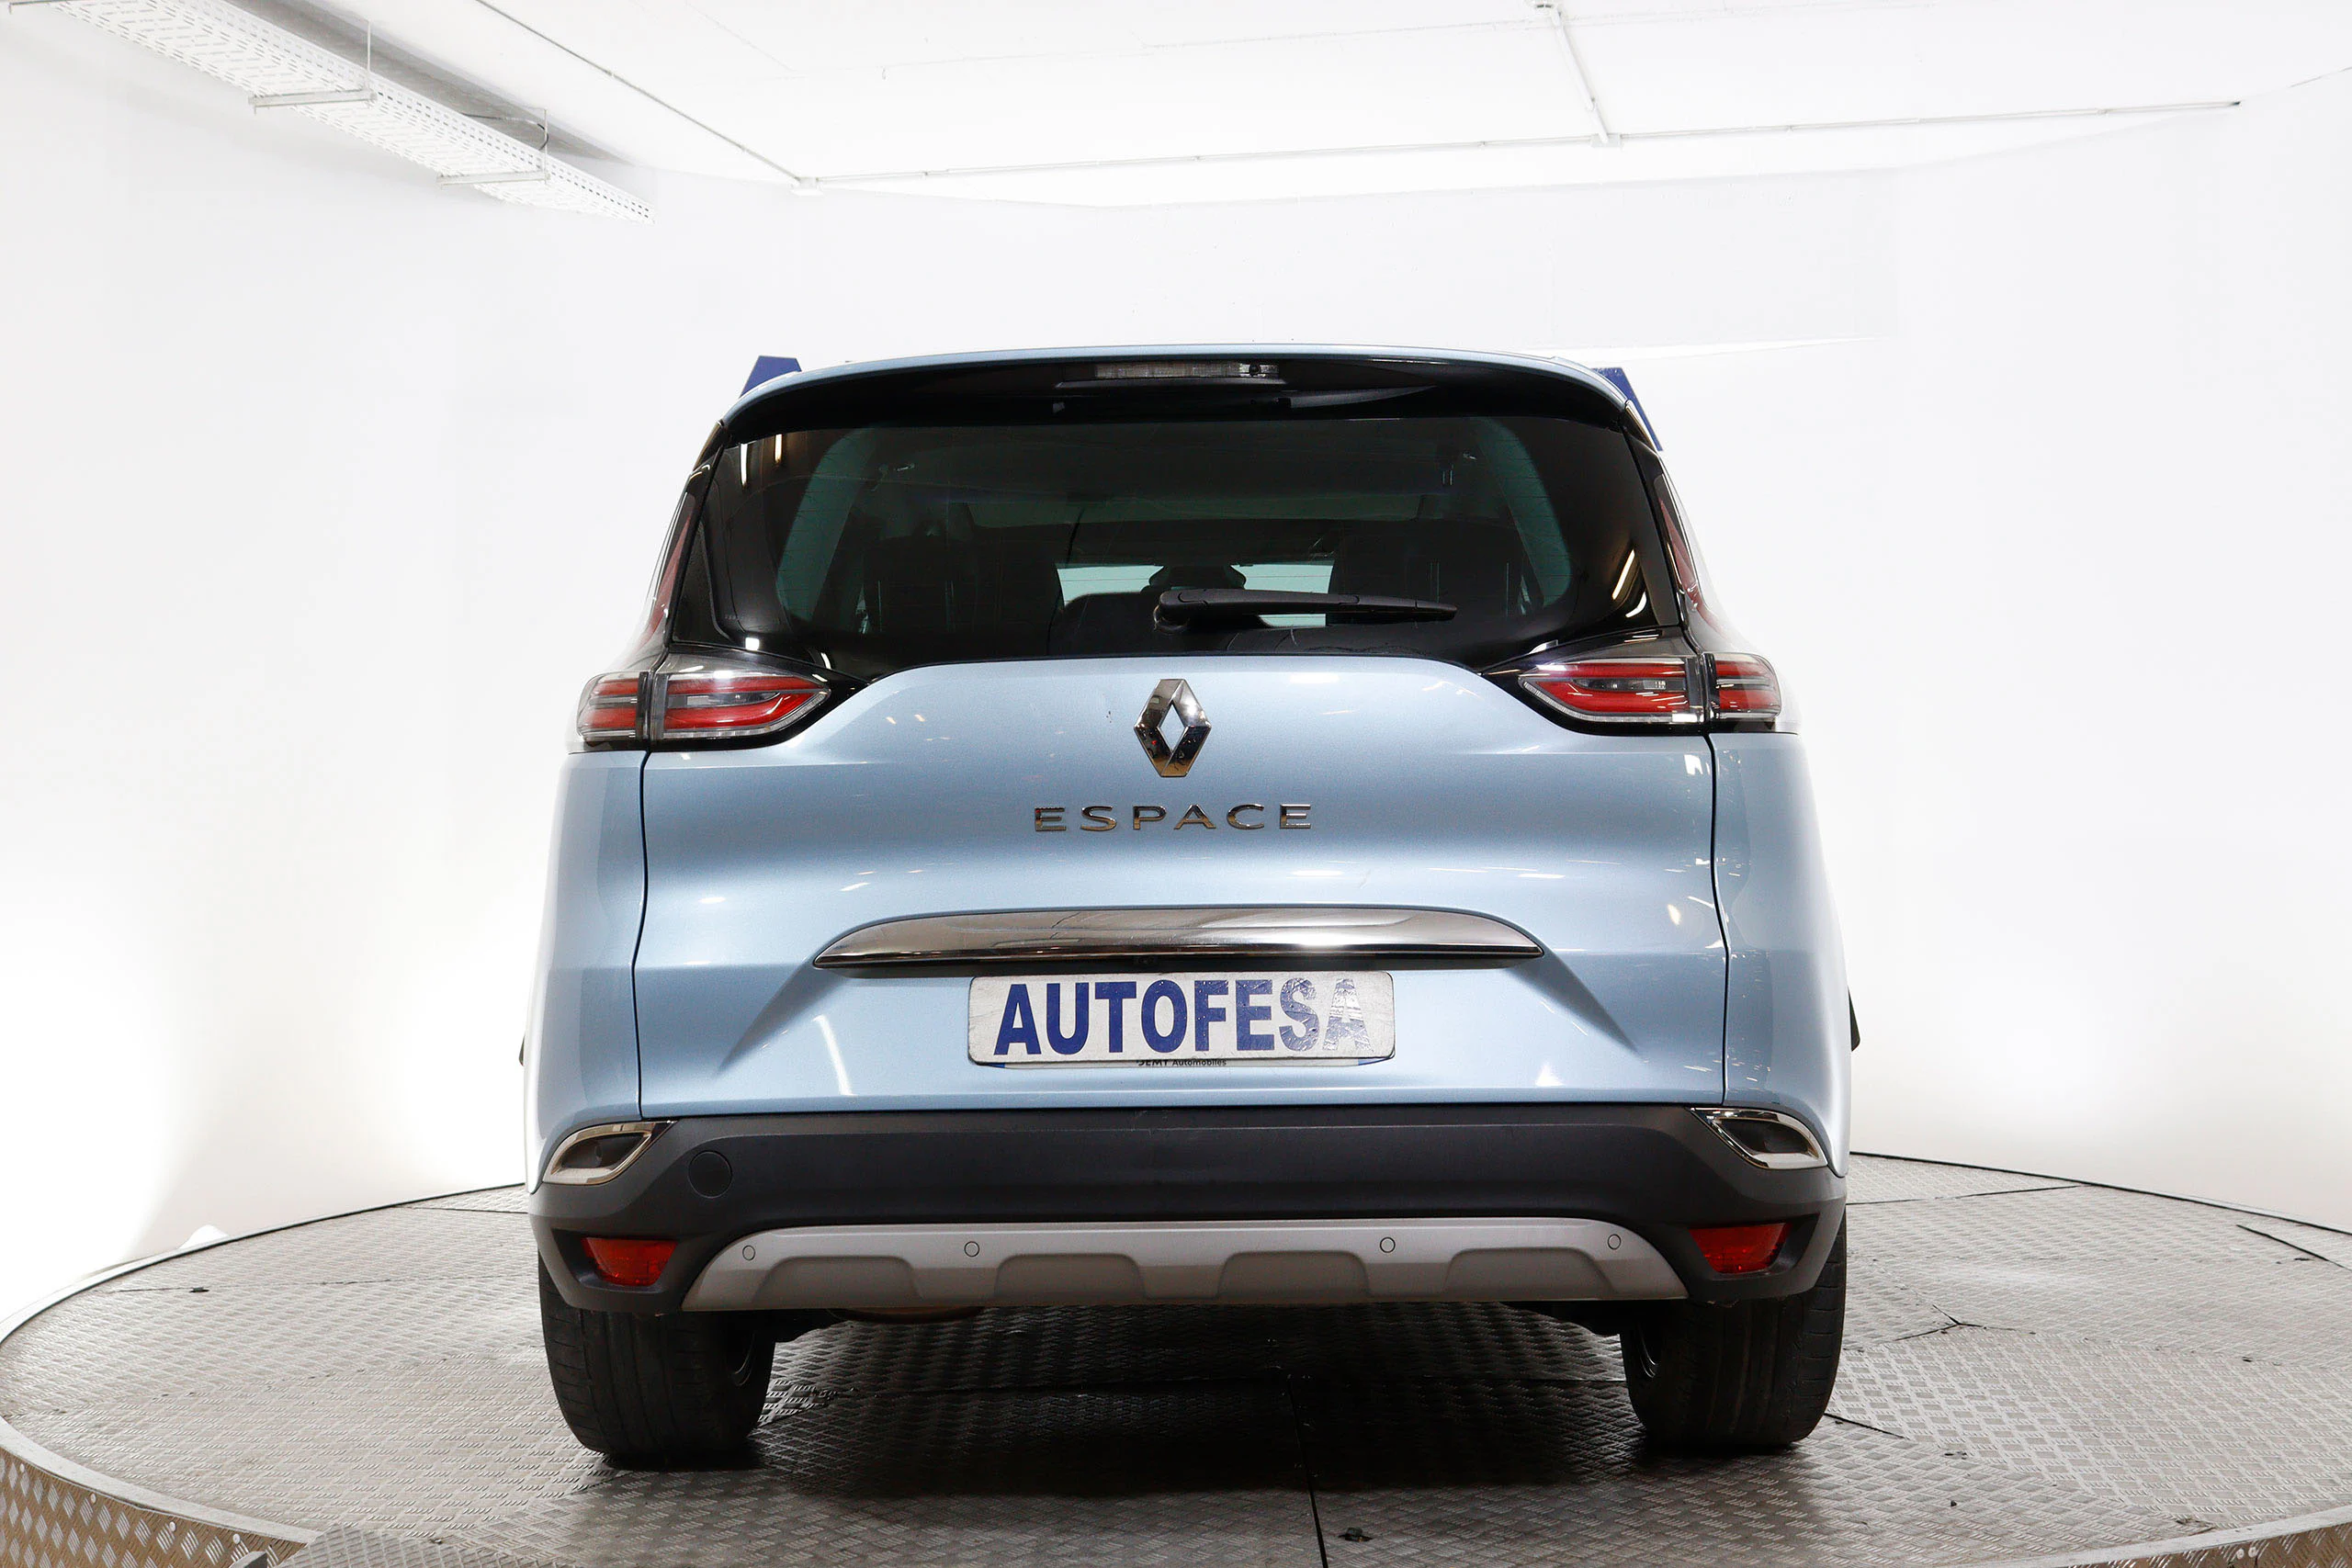 Renault Espace 1.6 DCI Intens 160cv Auto 5P 7 Plazas # NAVY, CUERO, TECHO PANORAMICO, FAROS LED - Foto 7